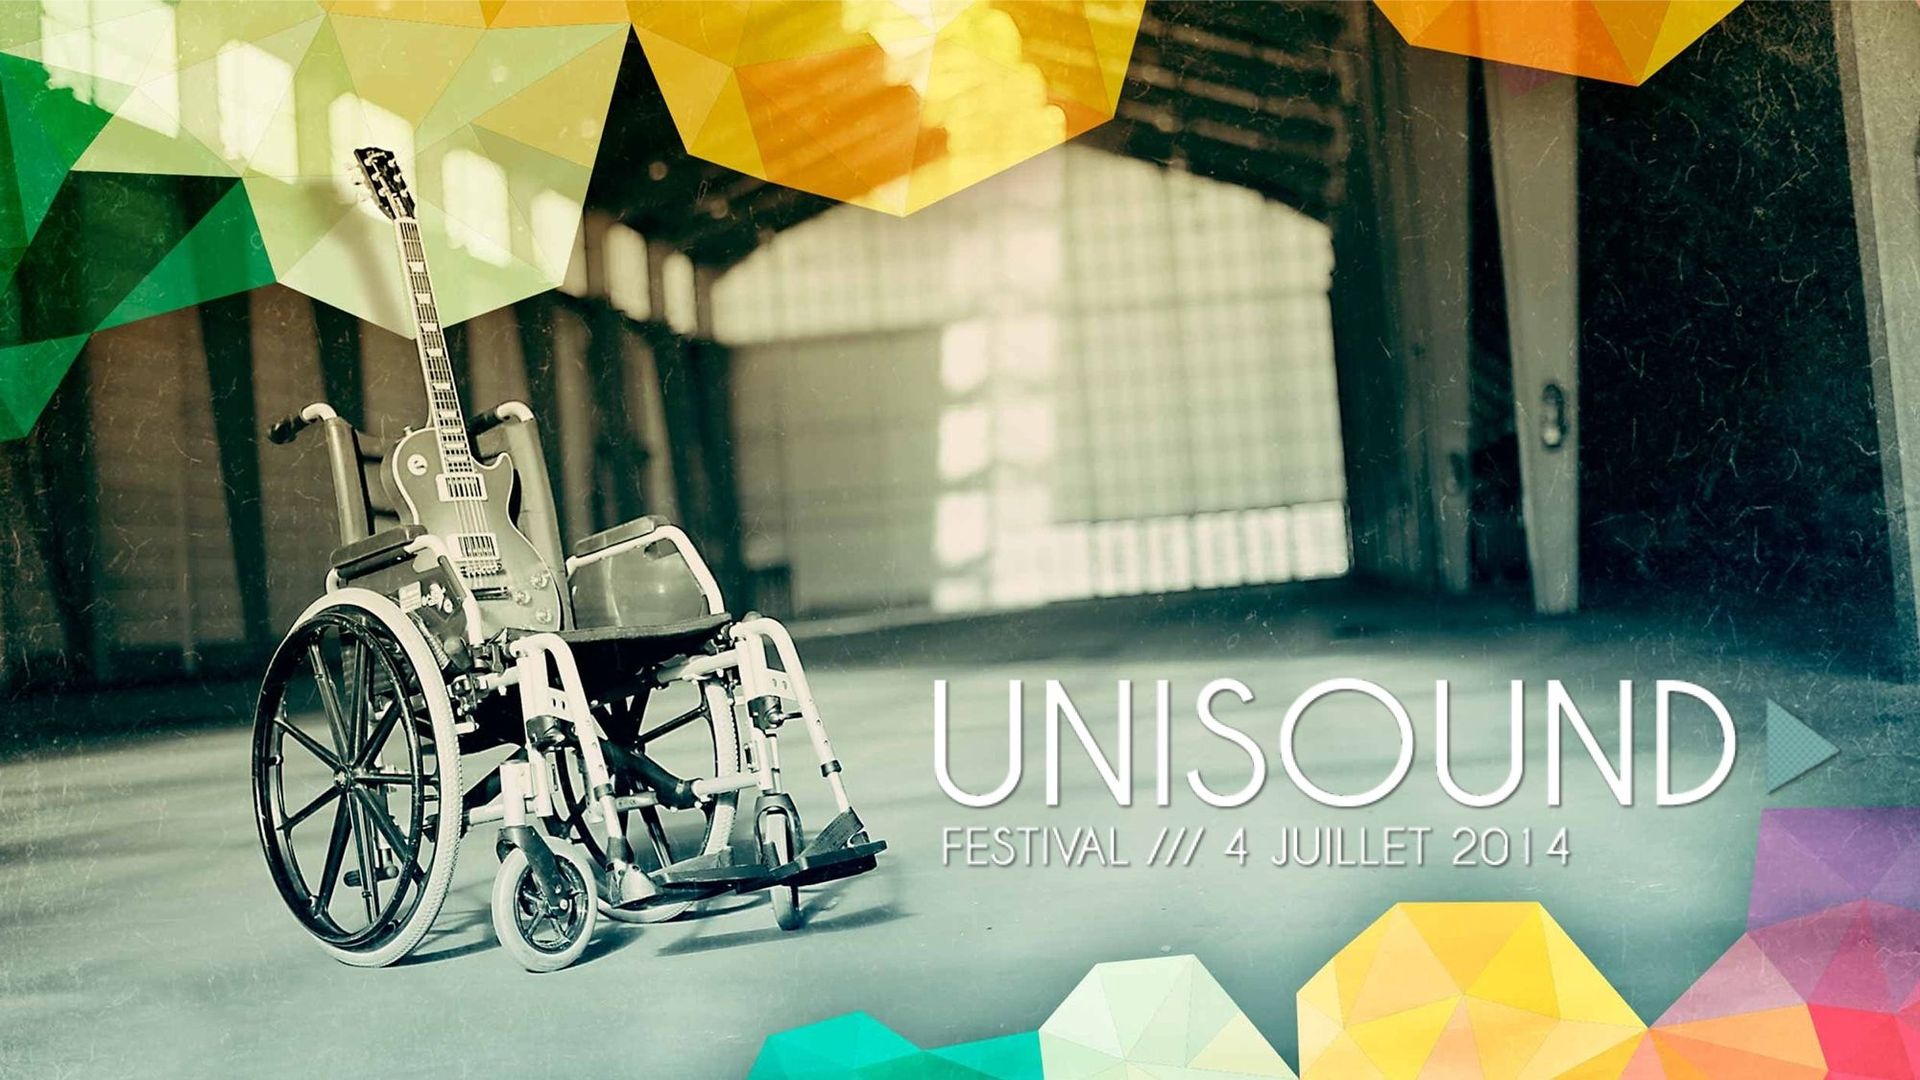 Ce vendredi, découvrez l'Unisound festival, spécifiquement pensé pour les personnes handicapées!